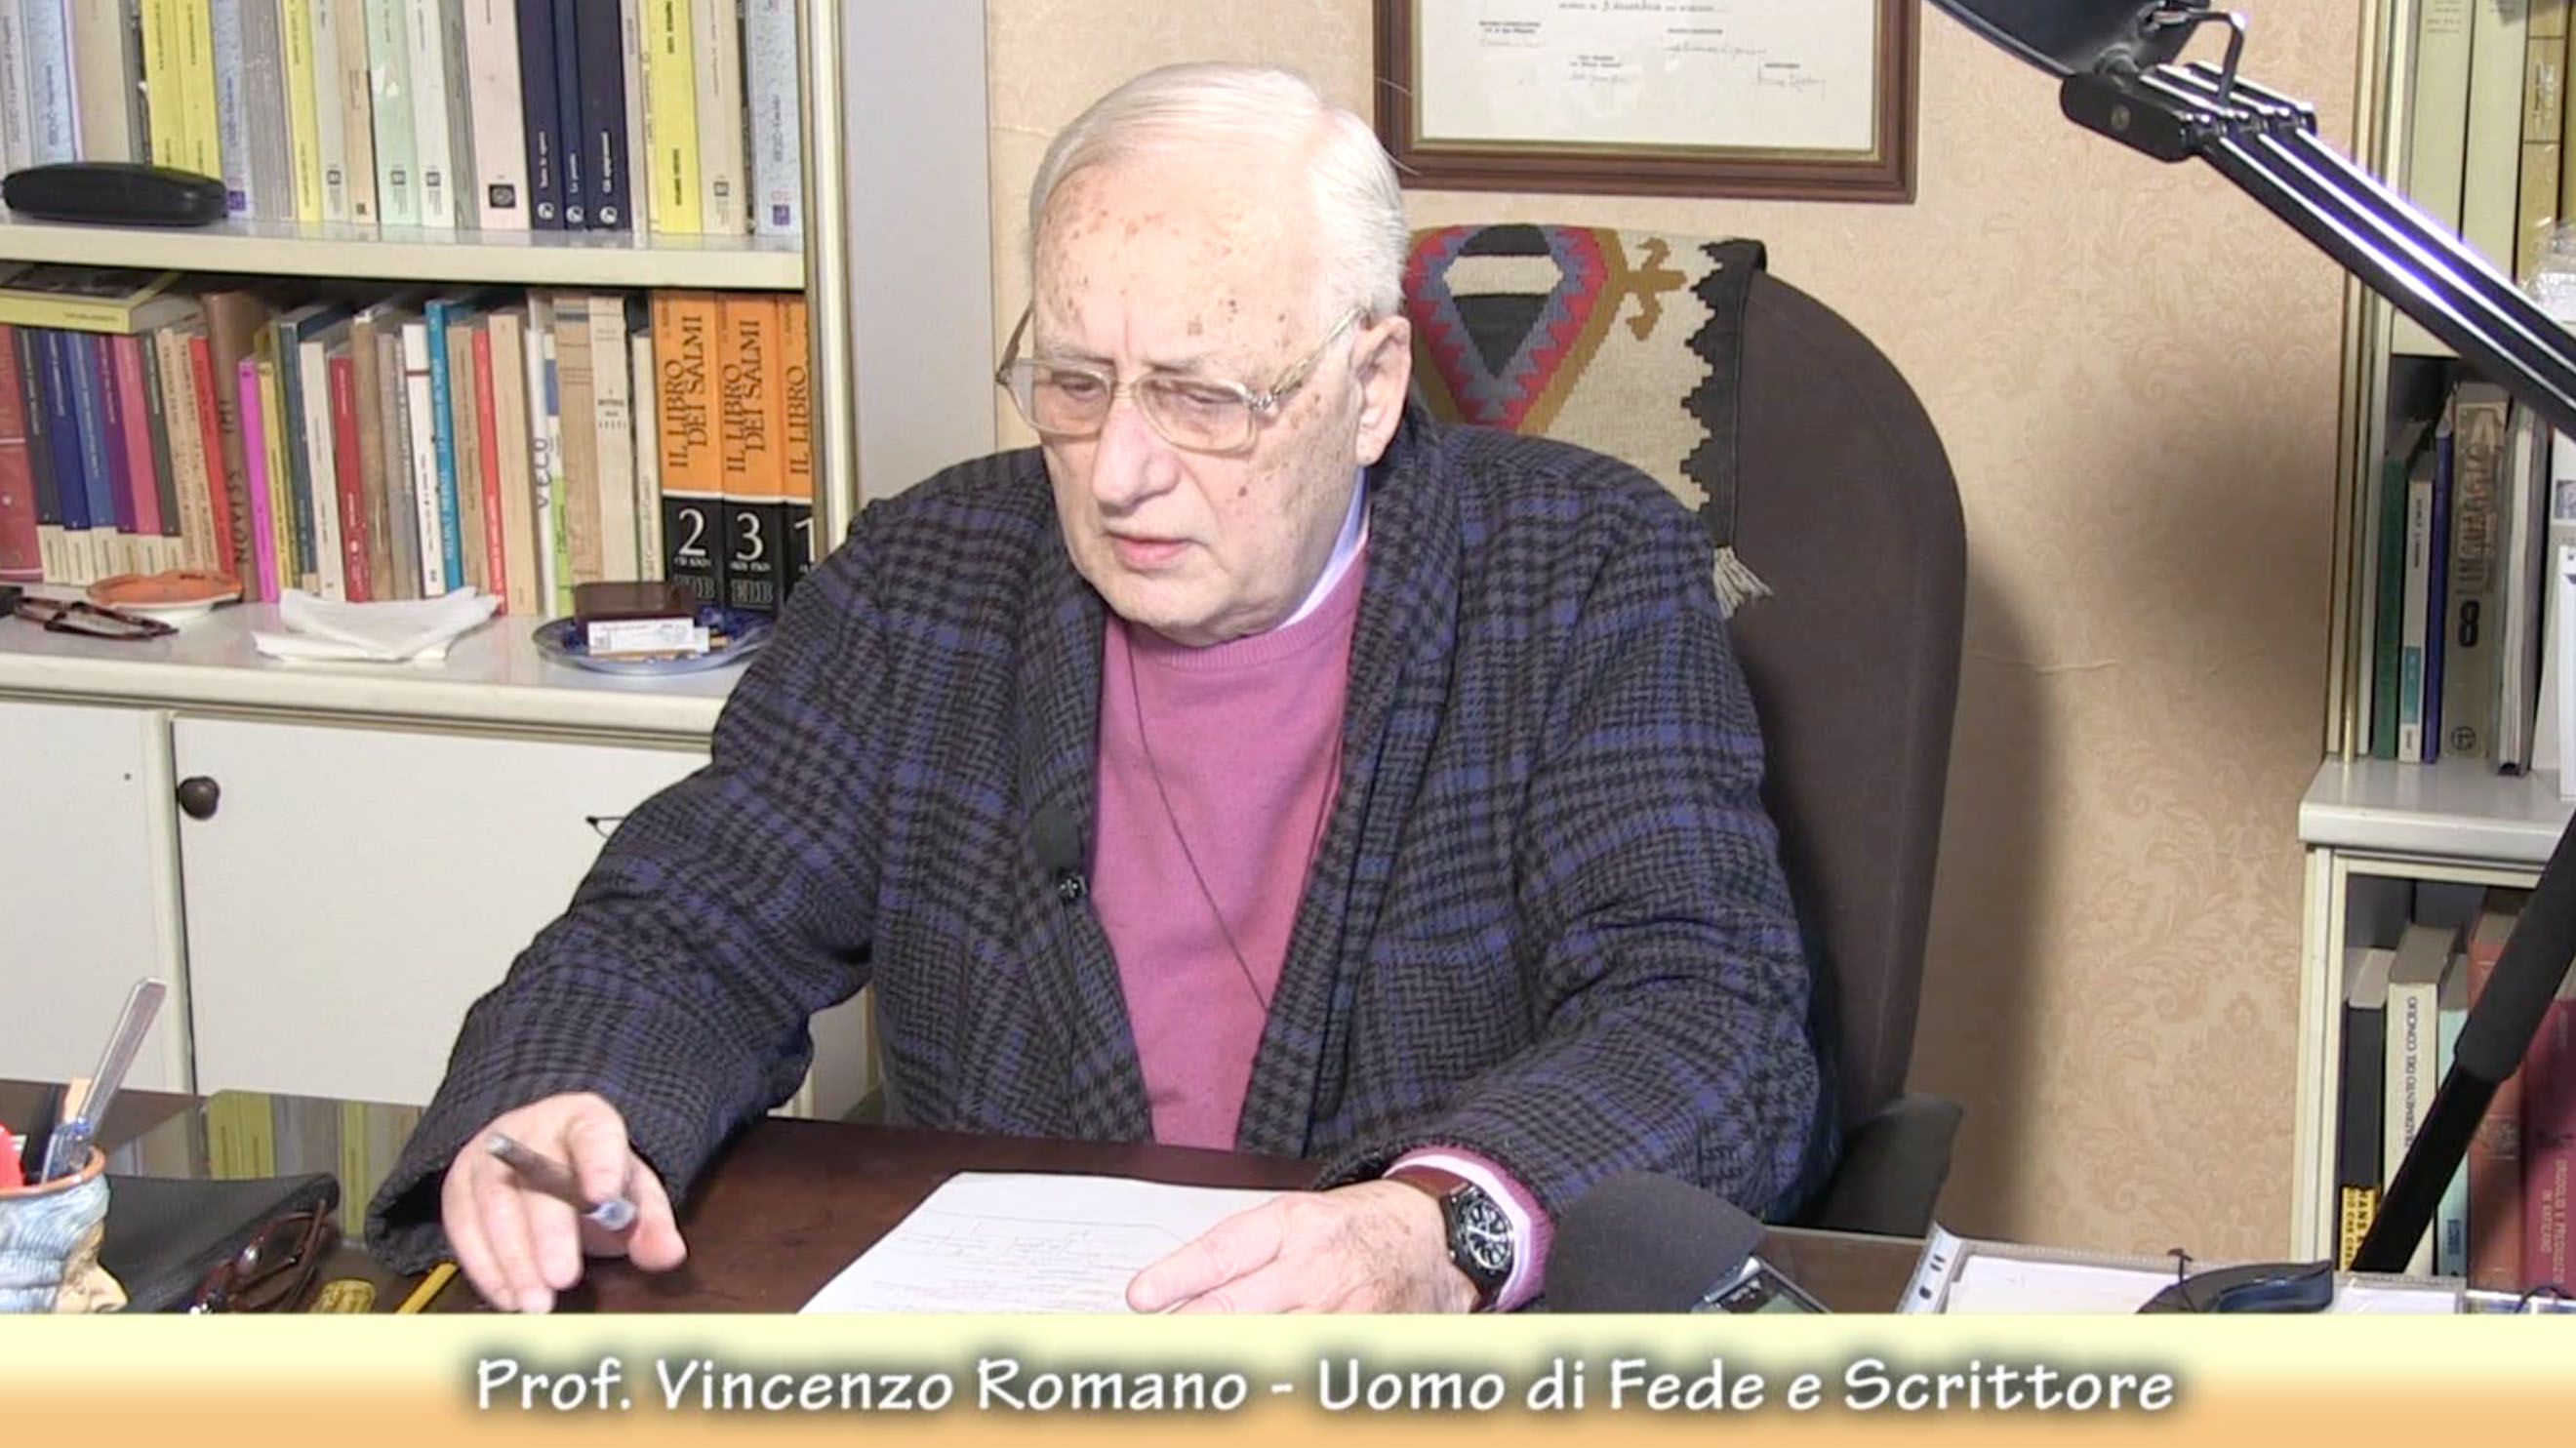 Vincenzo Romano - Scrittore e uomo di fede